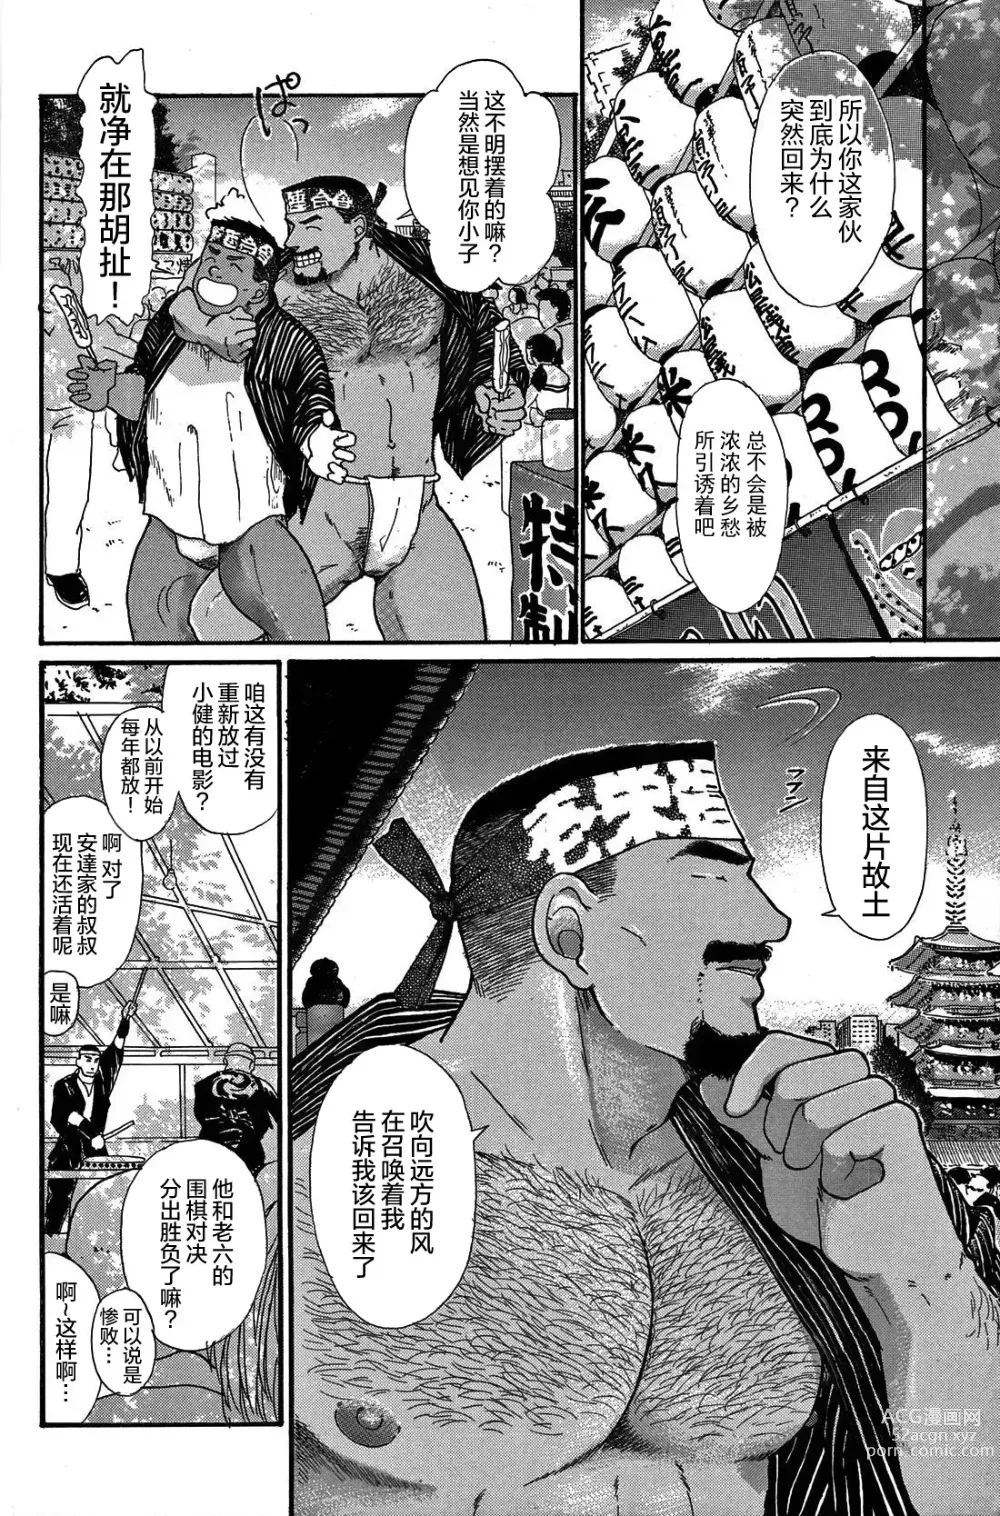 Page 7 of manga 纯情-第一章-纯情!!